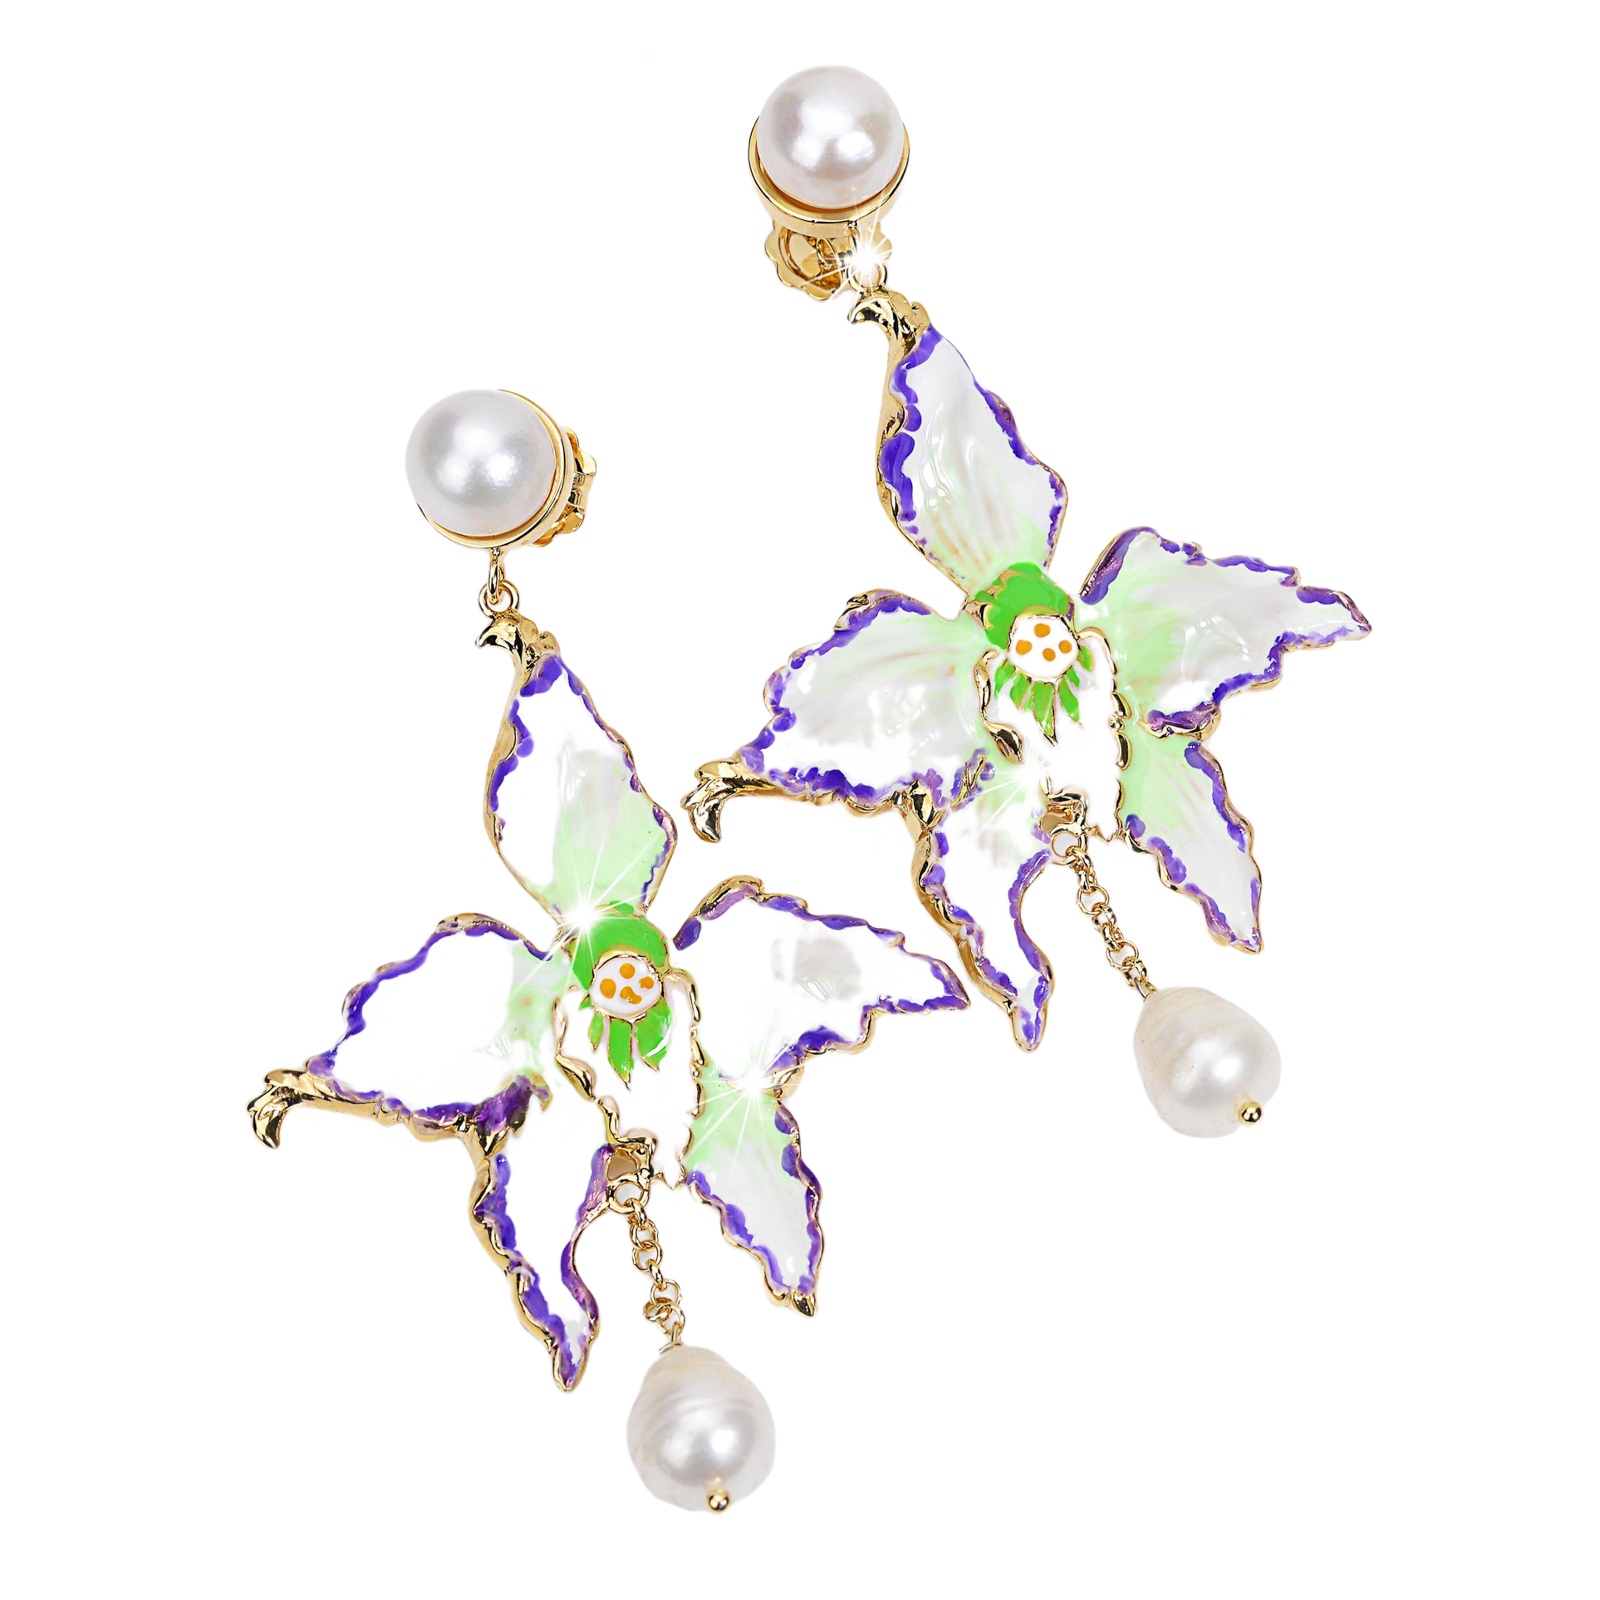 Orecchini orchidea con al lobo e pendente perle barocche naturali bianco sfumature viola nel conto e verde